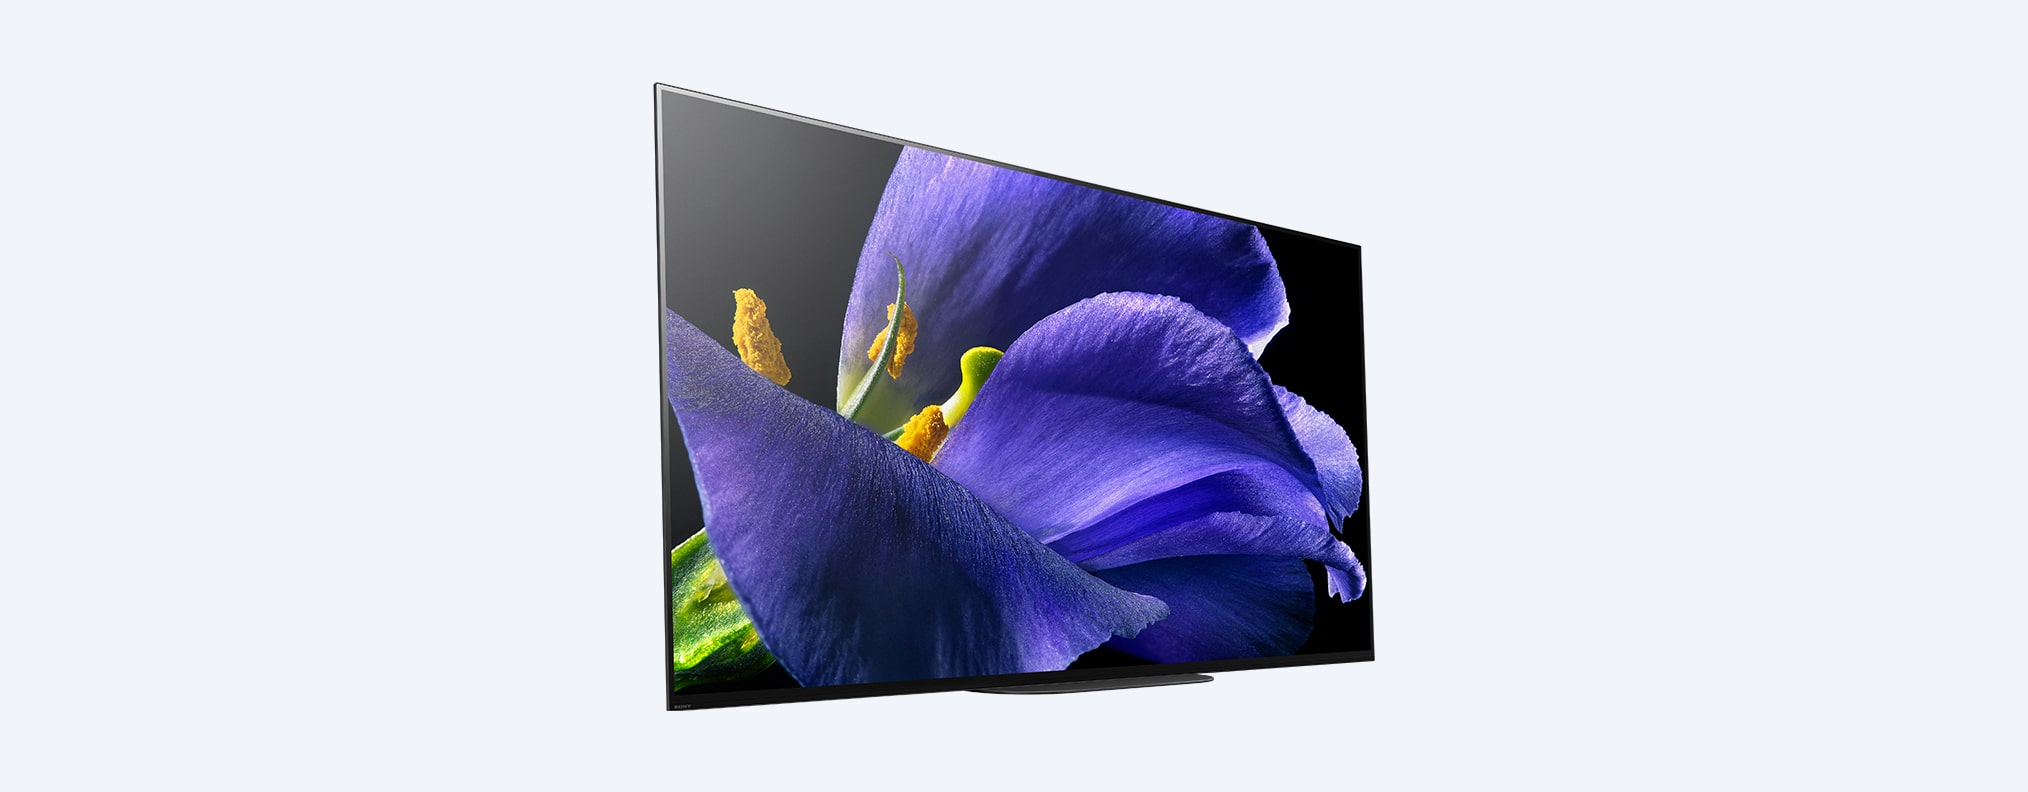 AG9 | סדרת MASTER‏ | OLED‏ | 4K Ultra HD |‏ טווח דינמי גבוה (HDR)‎ | טלוויזיה חכמה (Android TV)